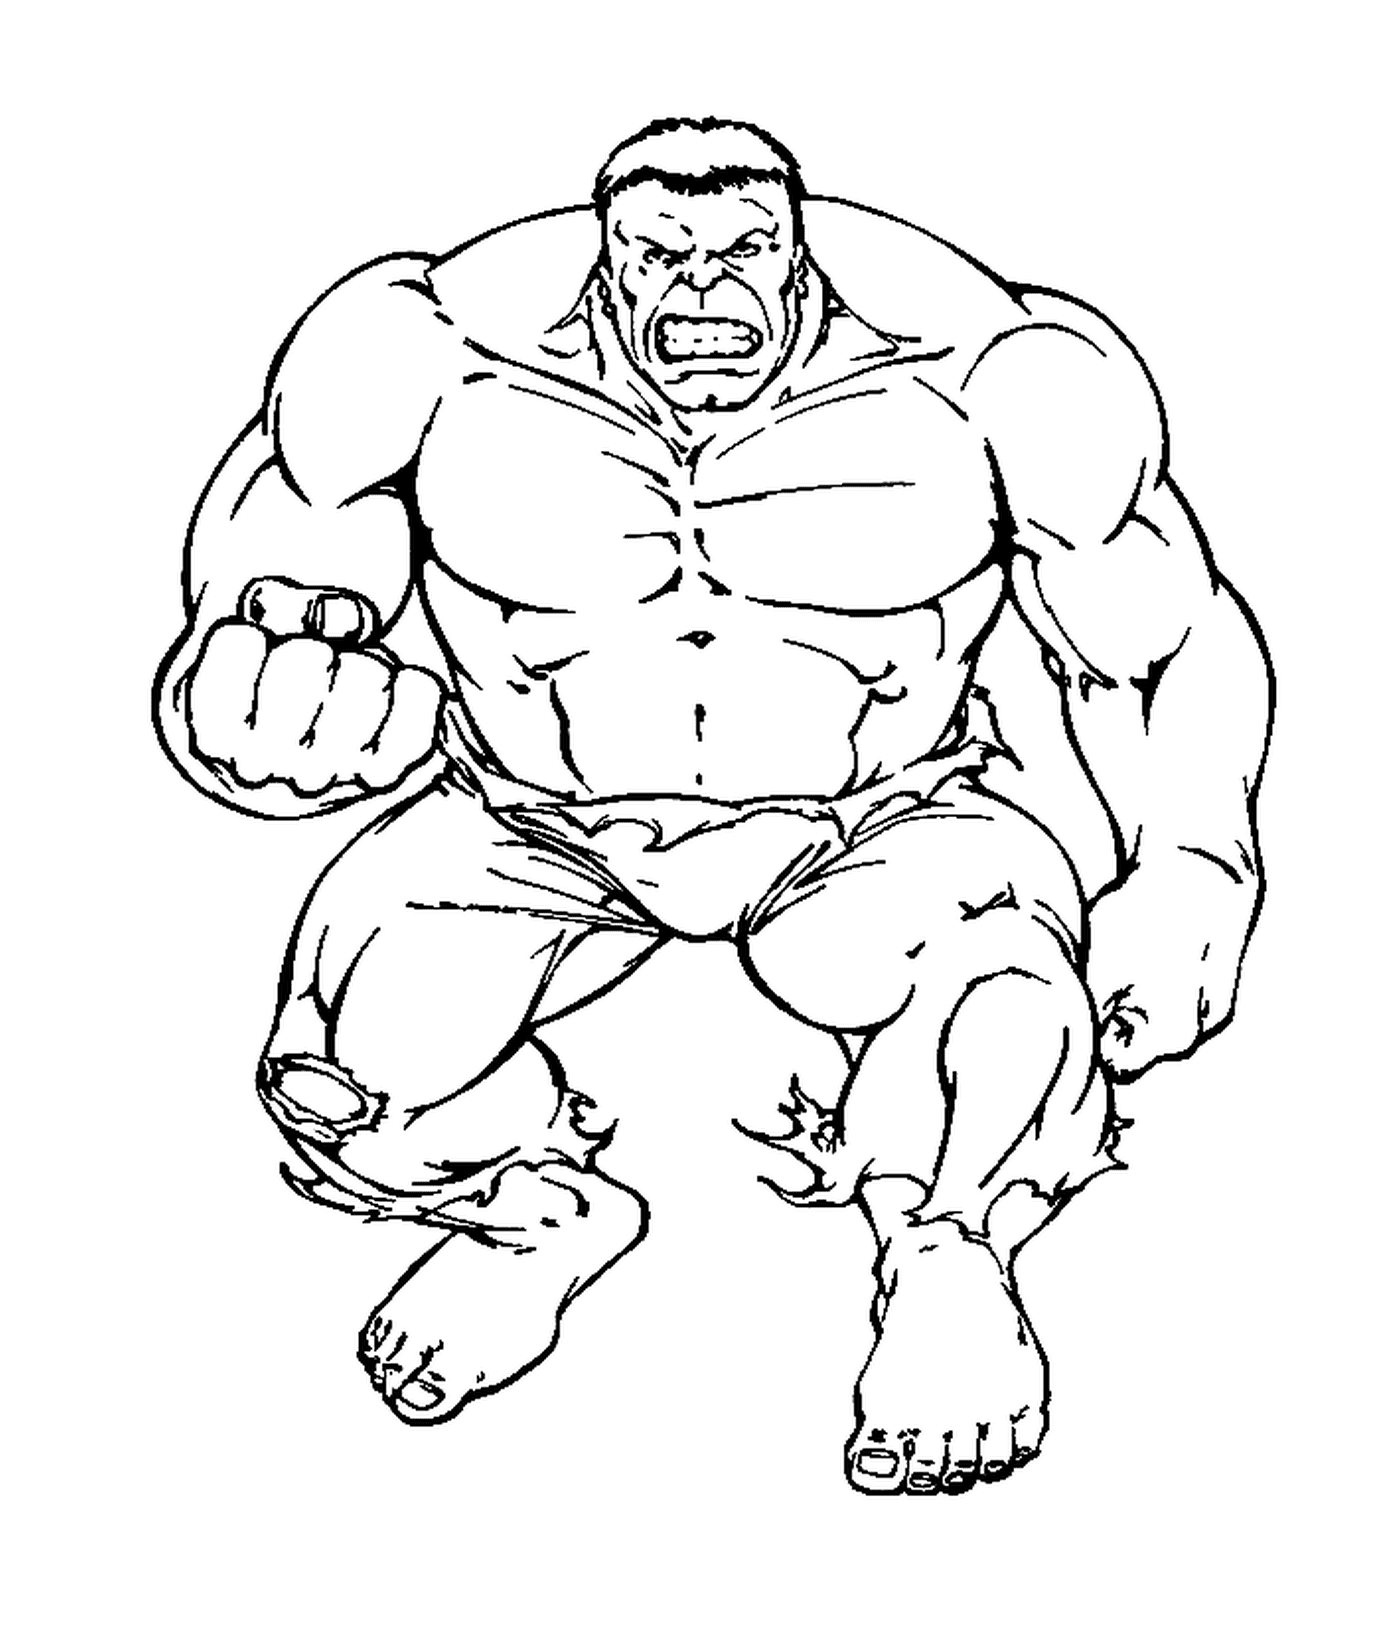   Hulk avec son poing rageur 